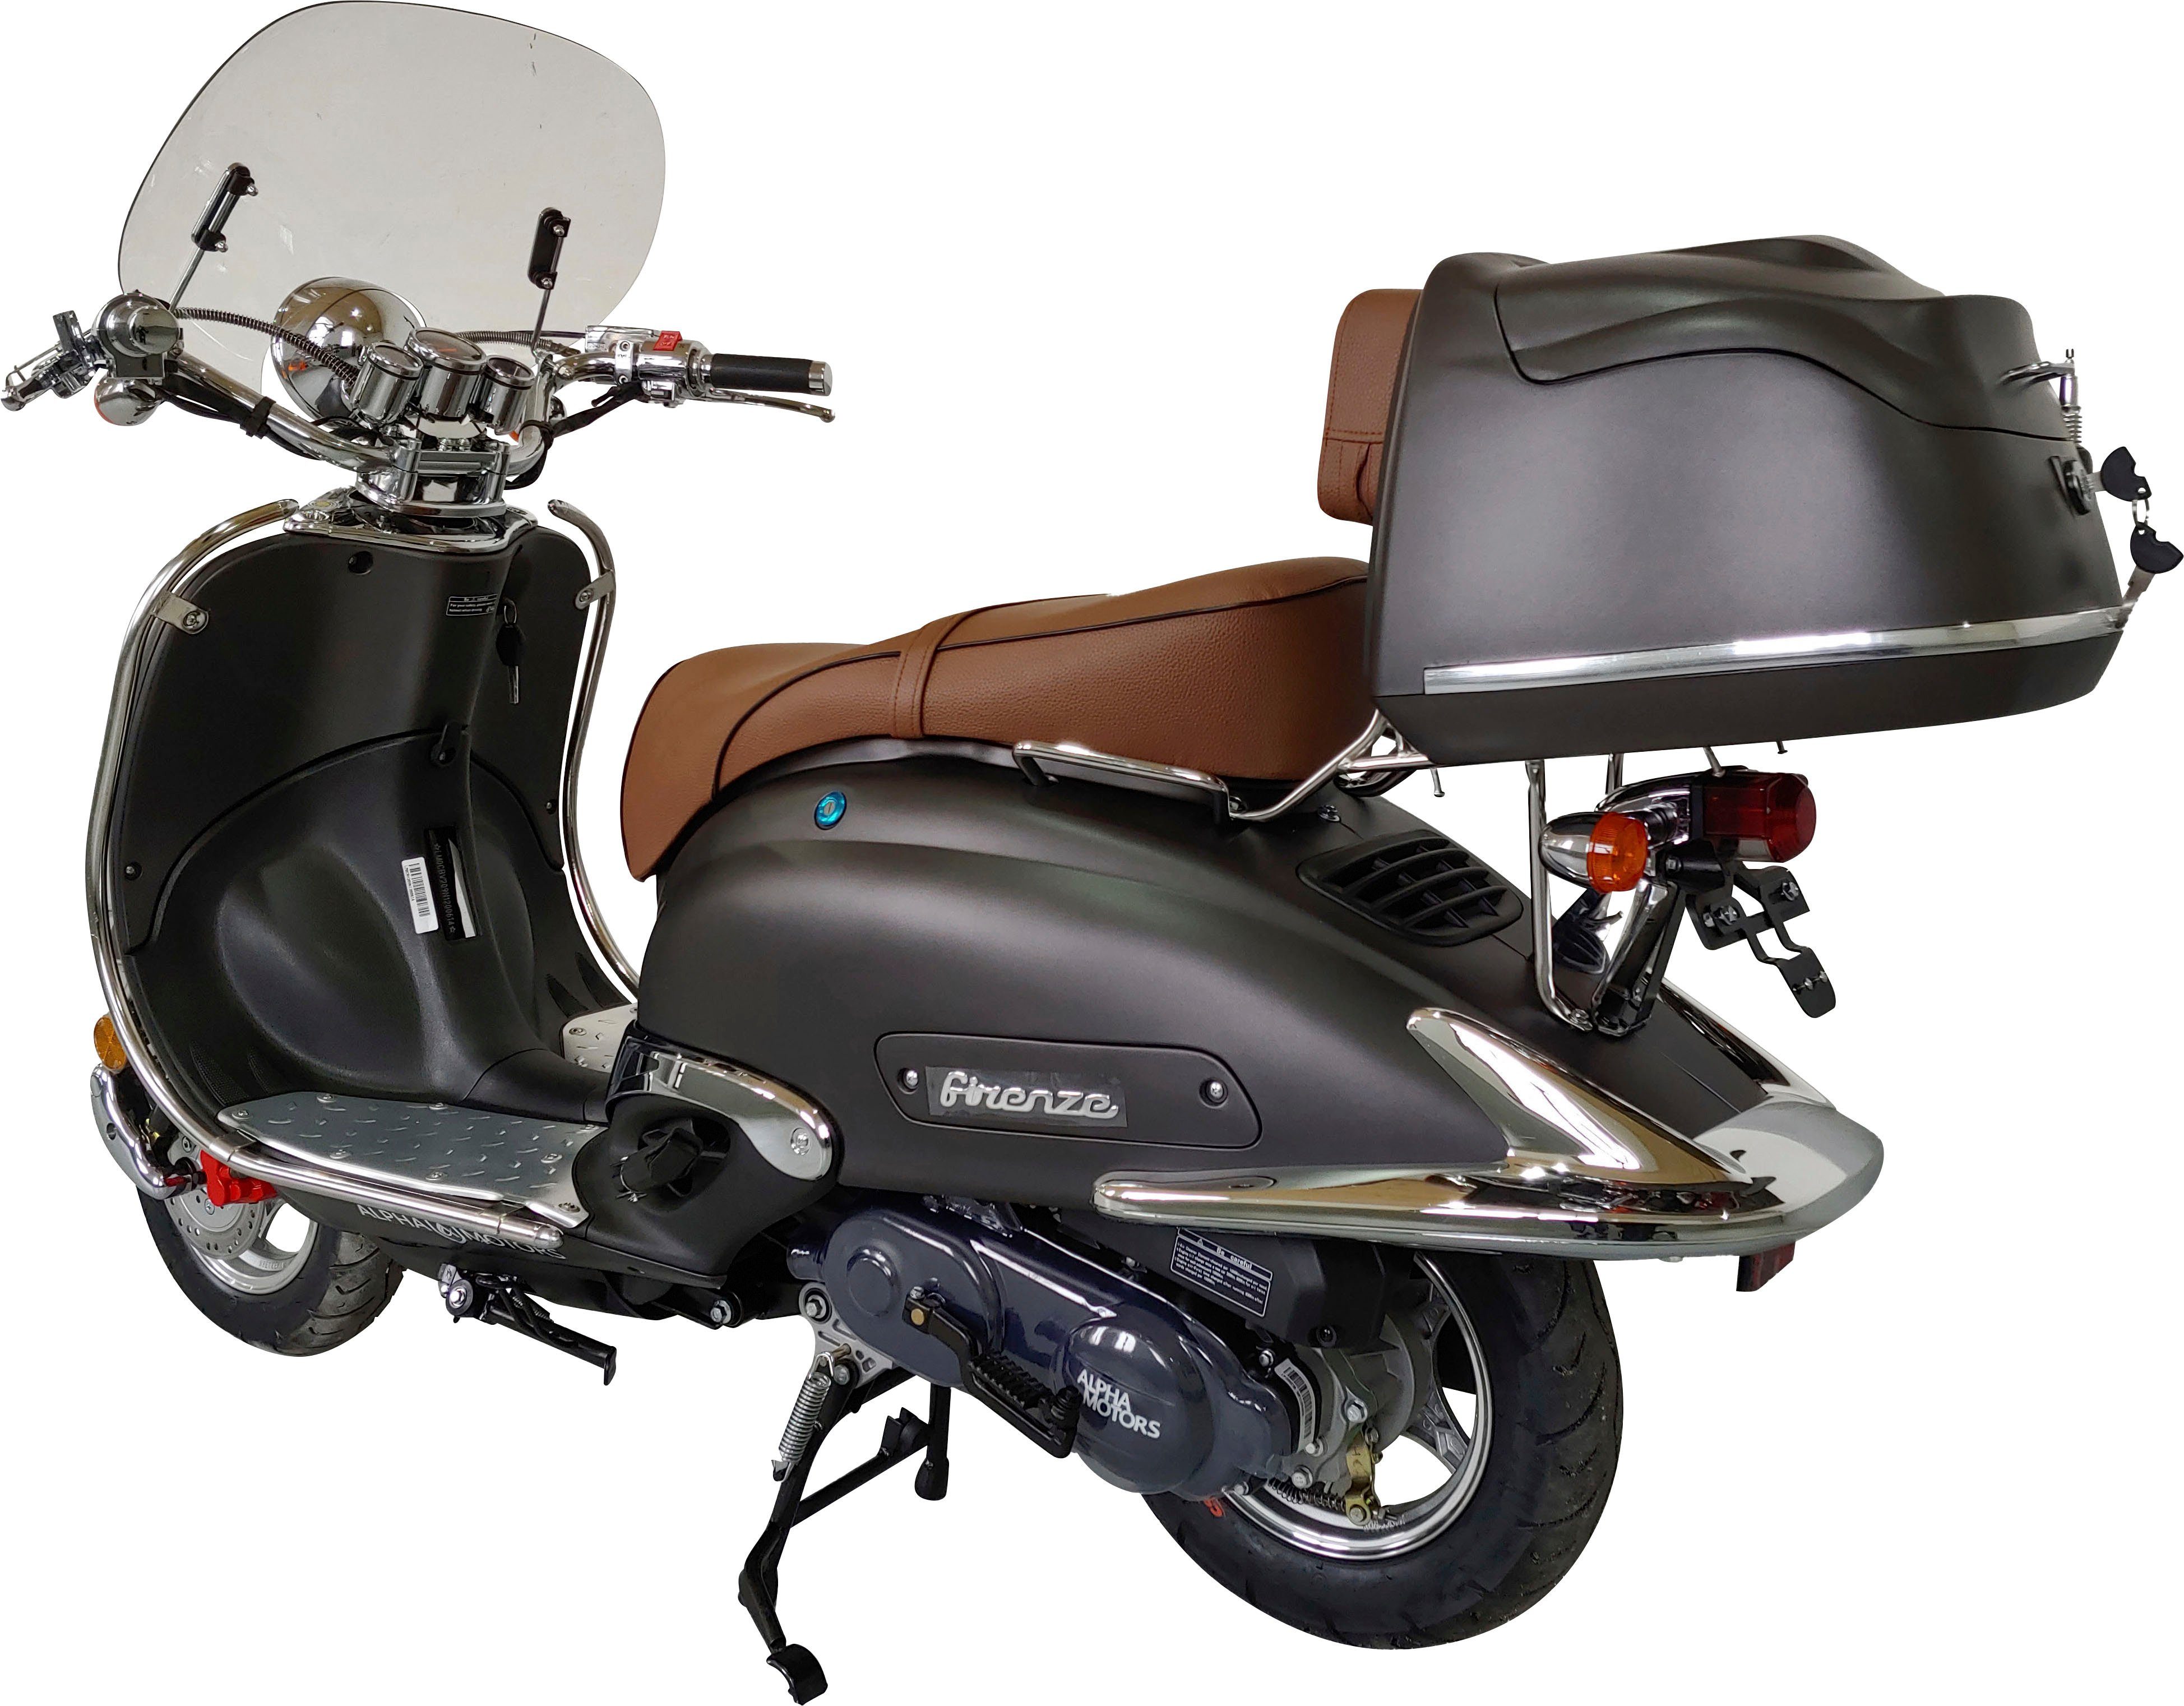 Alpha Motors Motorroller ccm, 5 45 Firenze 50 km/h, | Euro mattschwarz Limited, braun